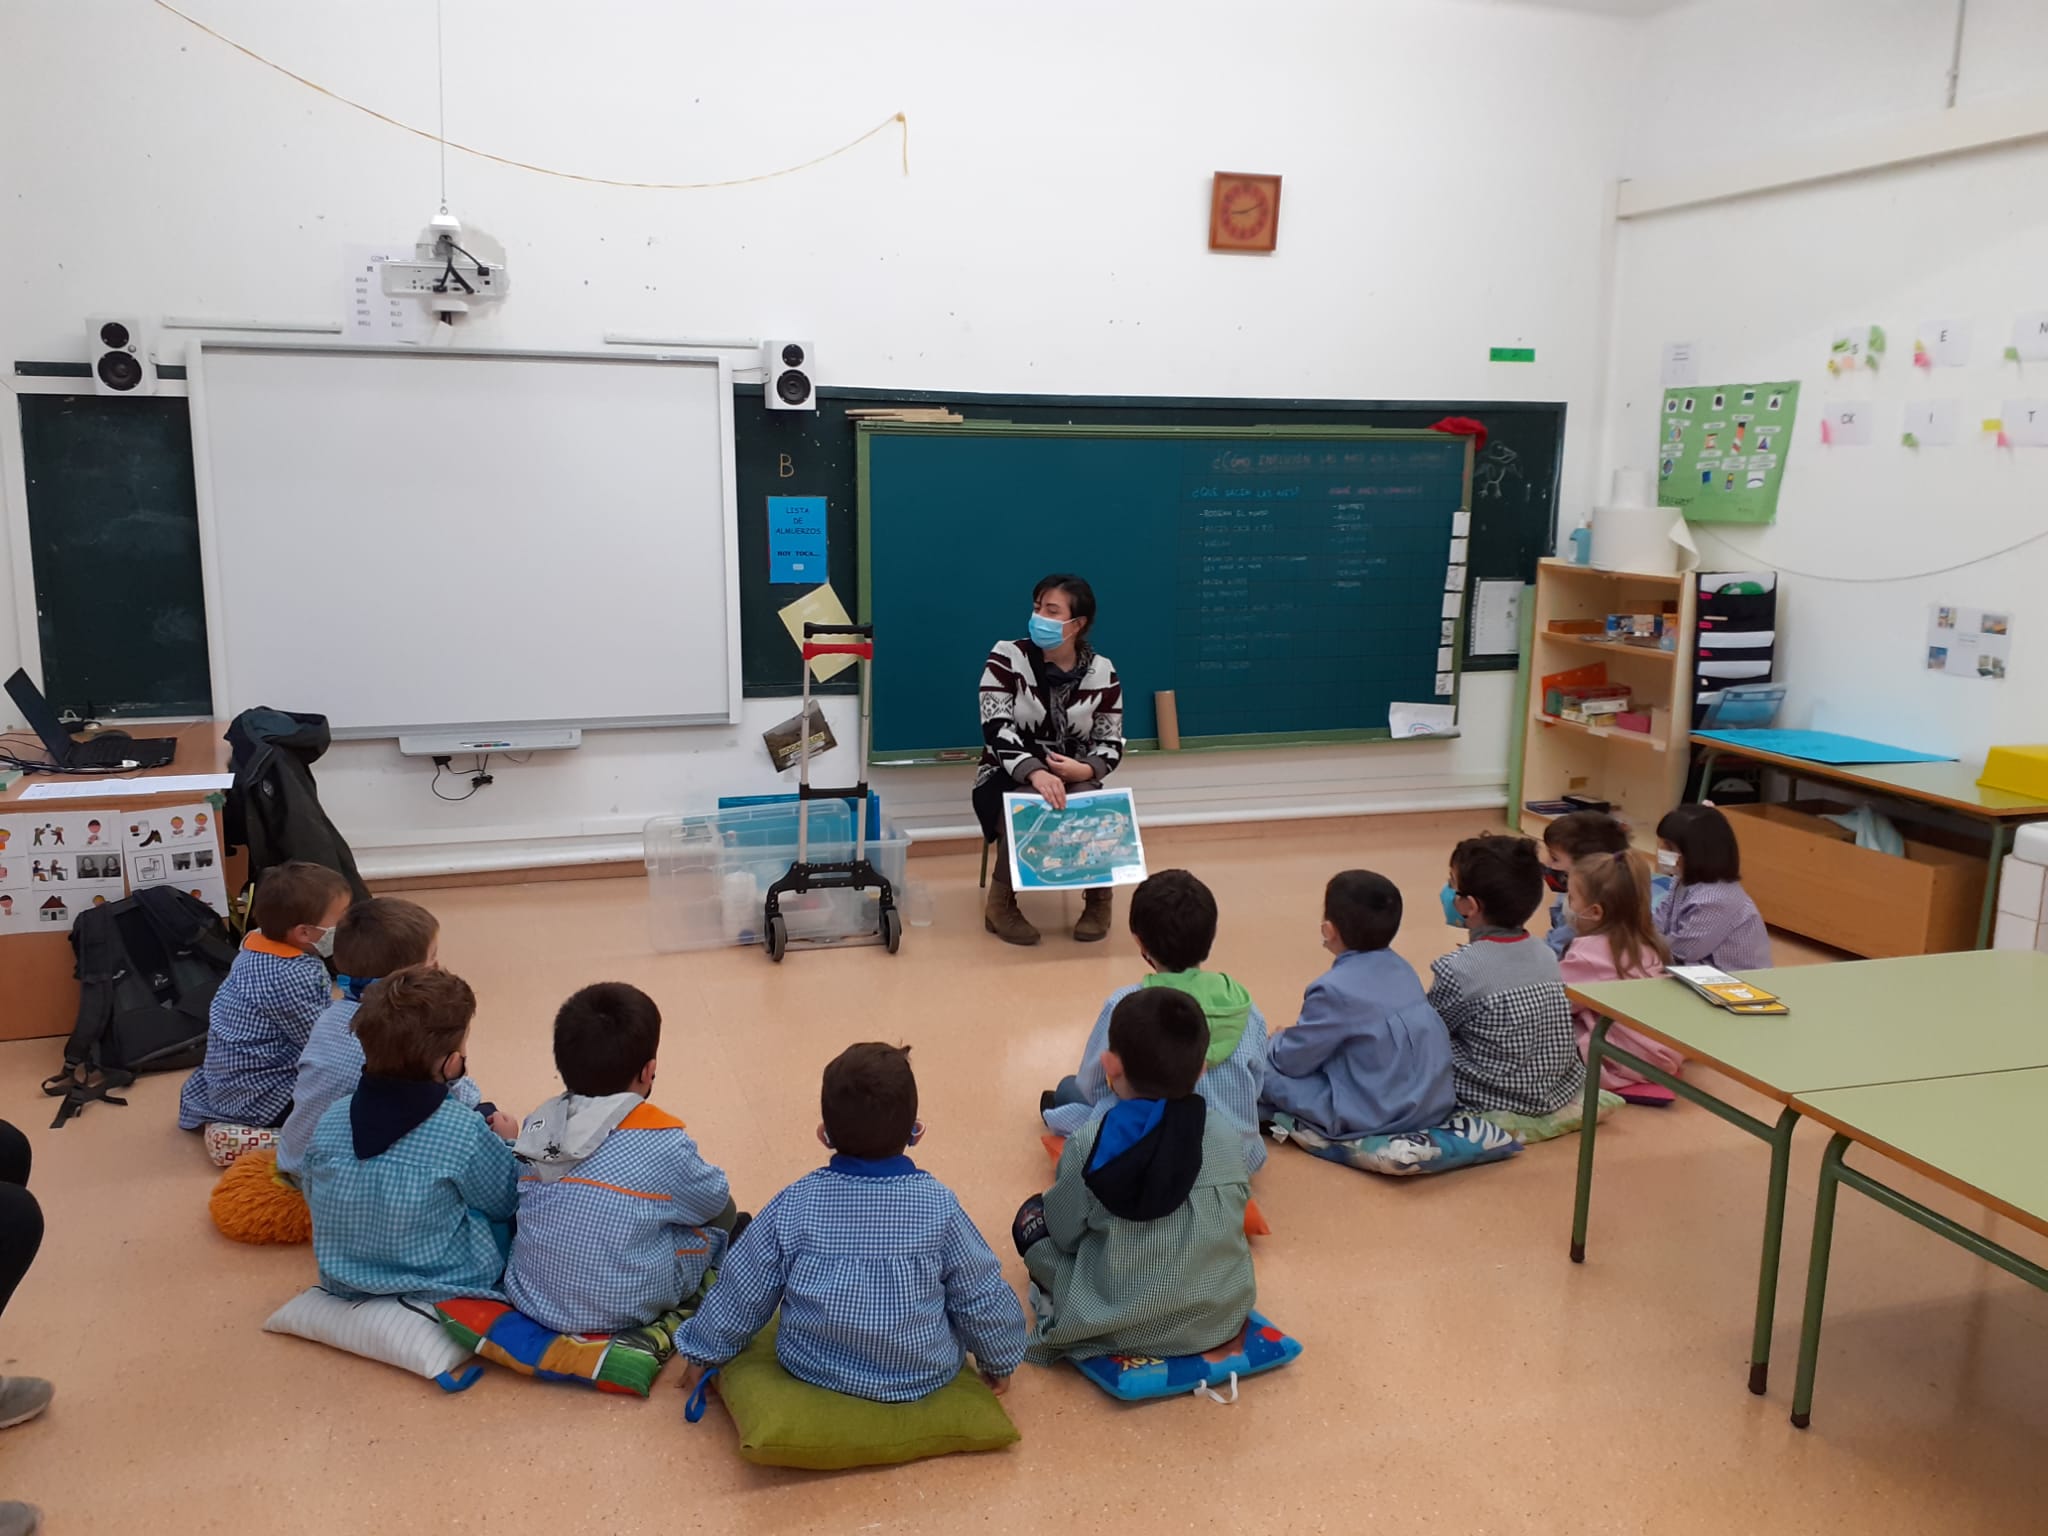 Fotografía de doce niños sentados en el suelo en un aula y una persona trabajadora de Nilsa